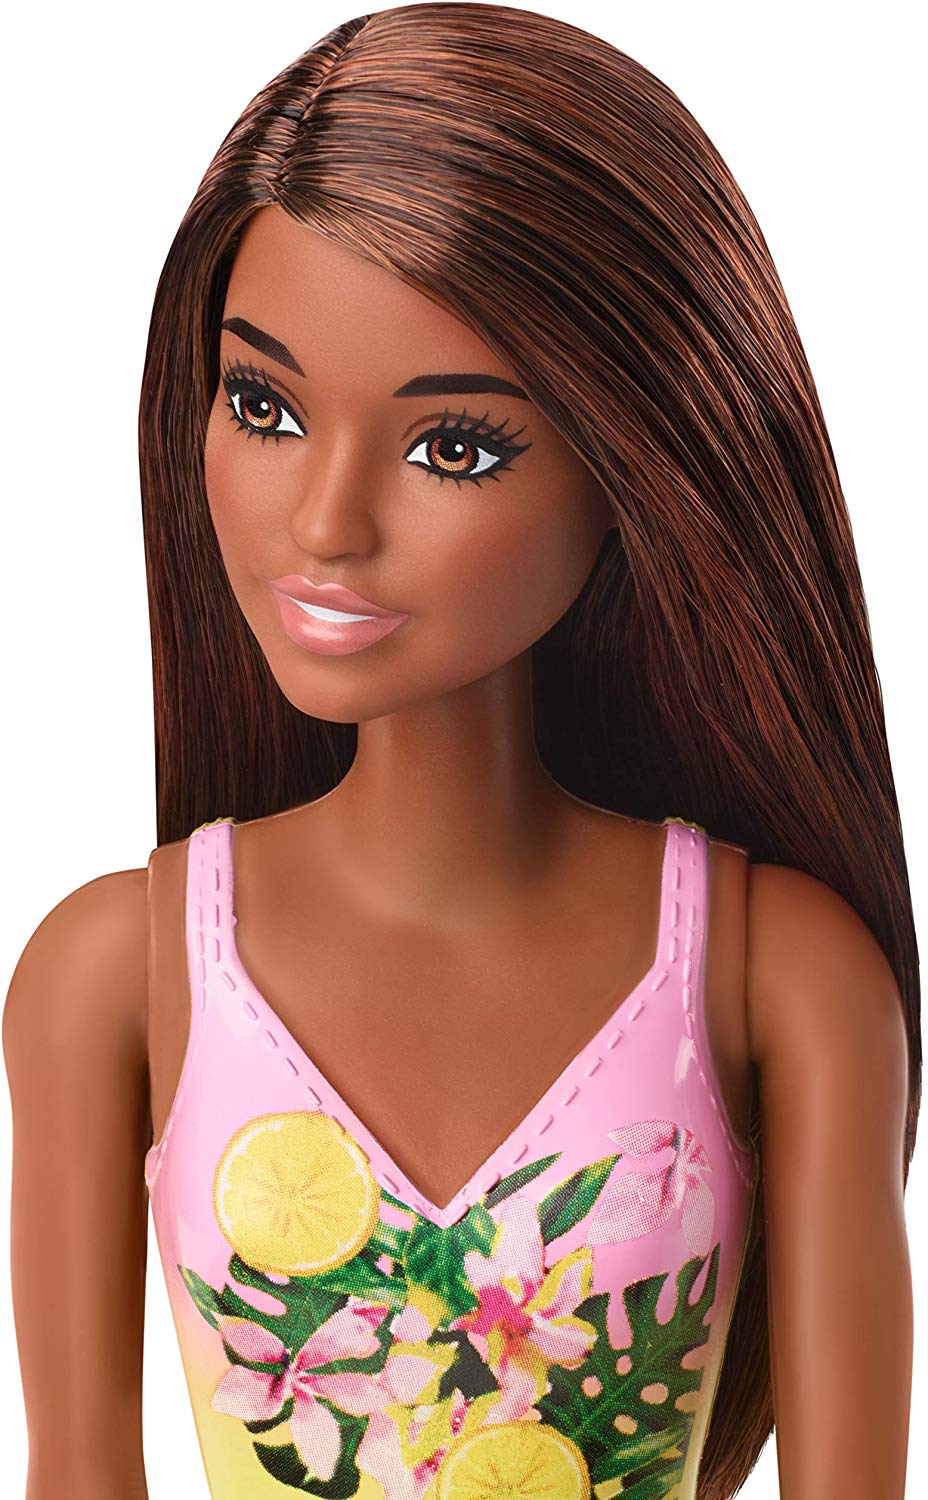 dark haired barbie doll